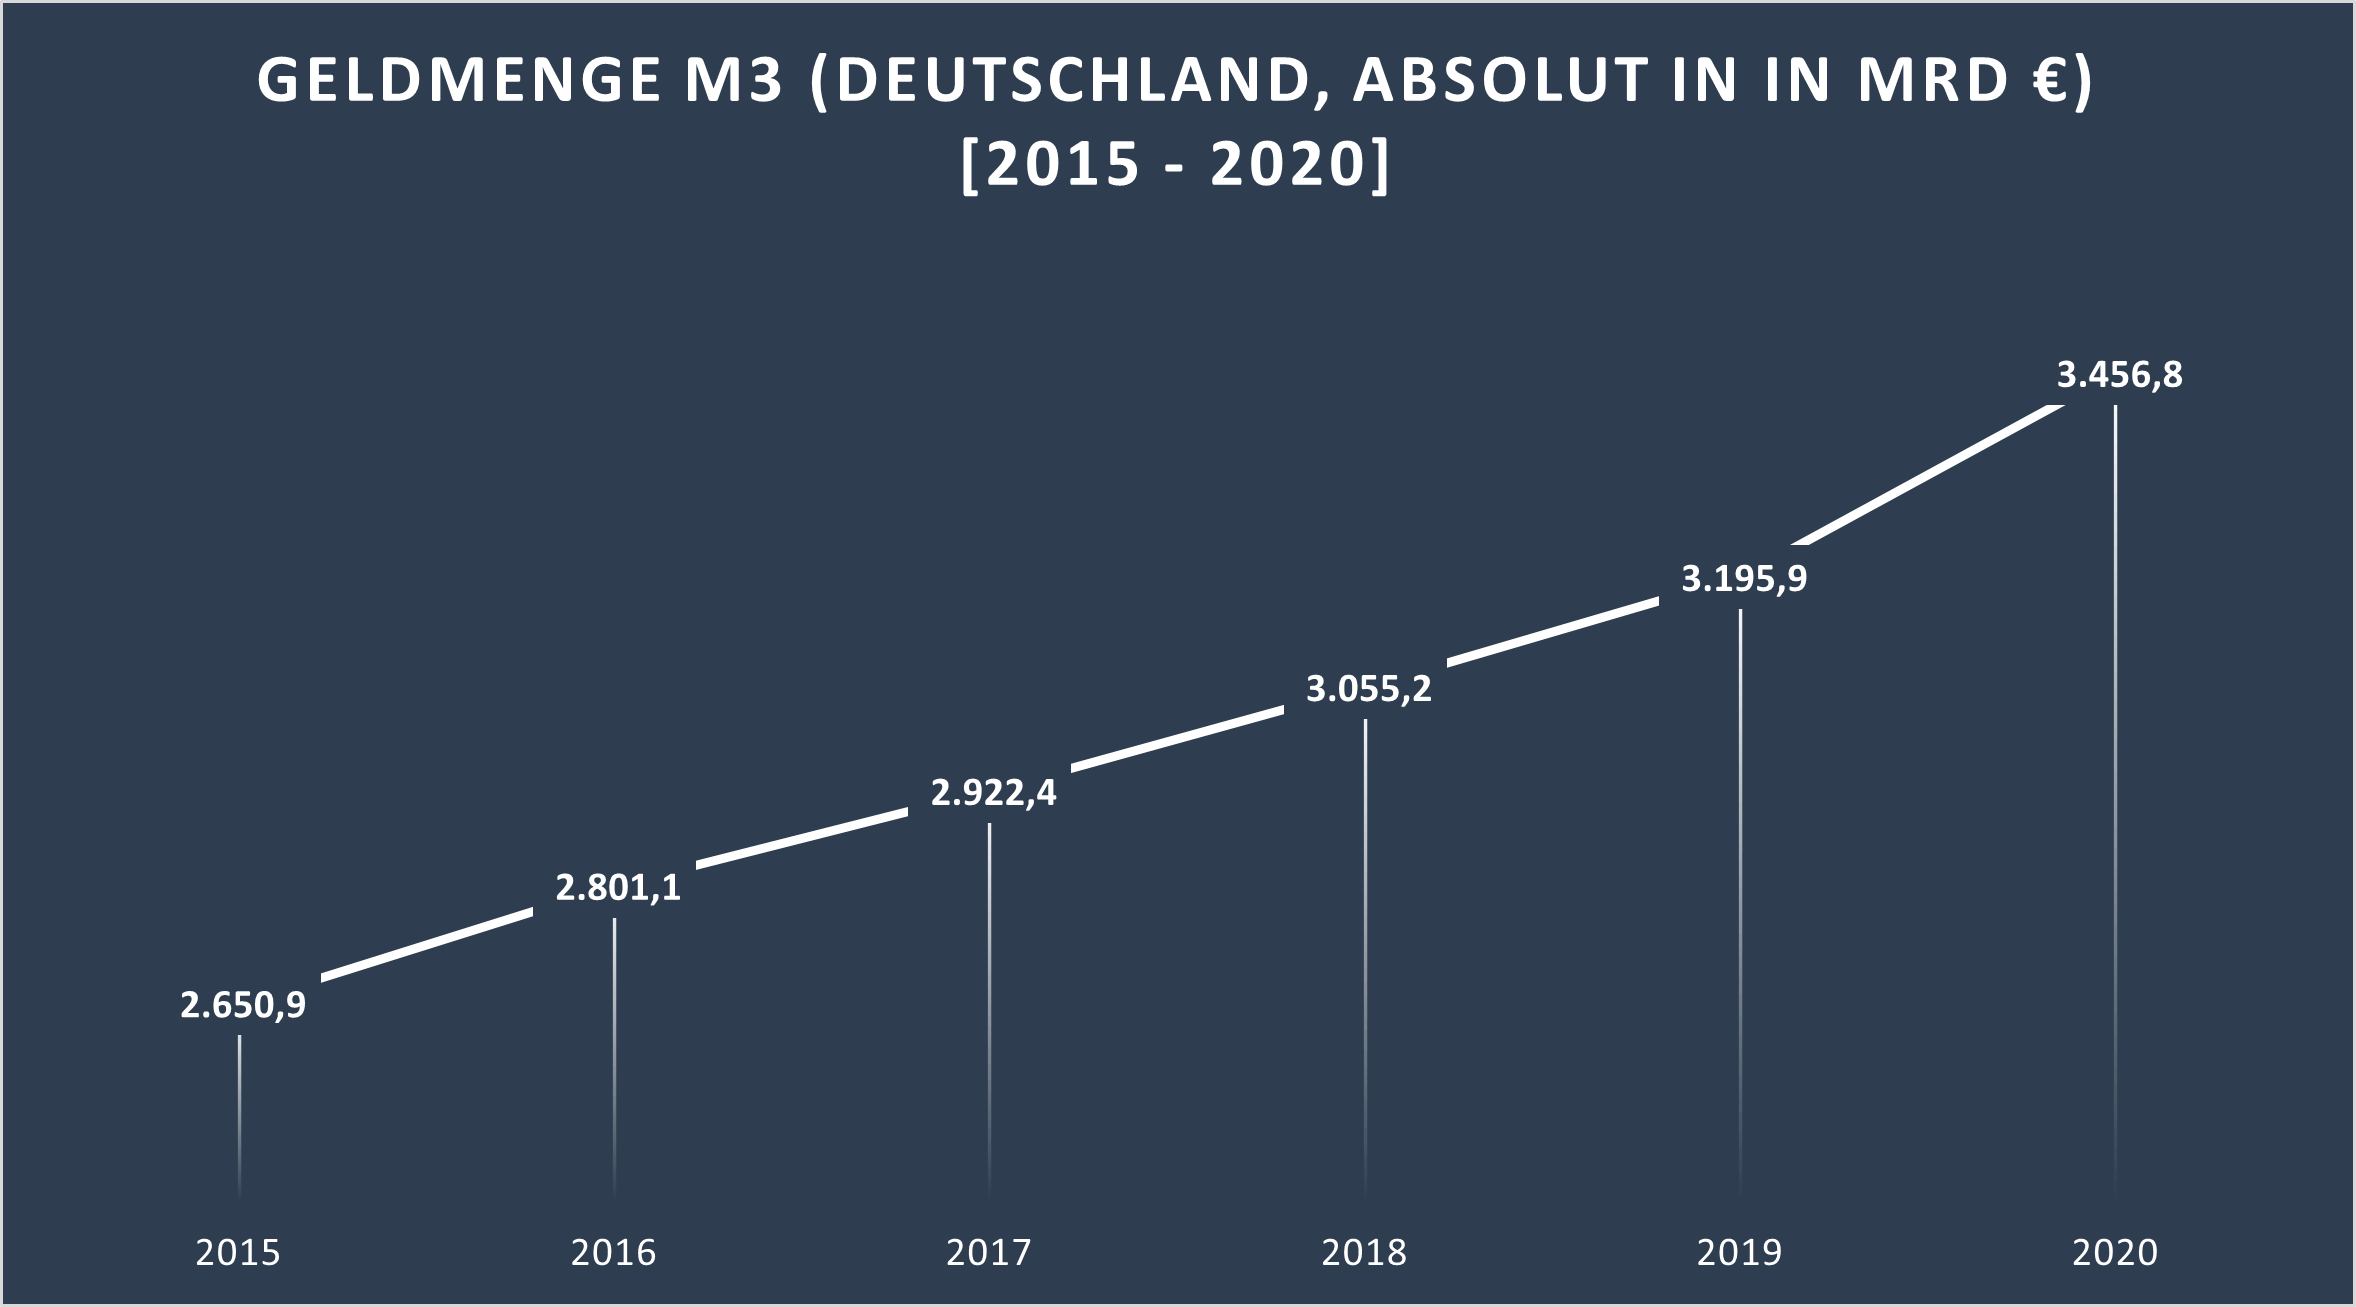 Steigerung der Geldmenge M3 zwischen 2015 und 2020. Betrug der Deutsche Beitrag in 2015 noch 2.650 Mrd €, so stieg er in 2020 auf 3.456 Mrd €. Eine Inflation von 30 %.